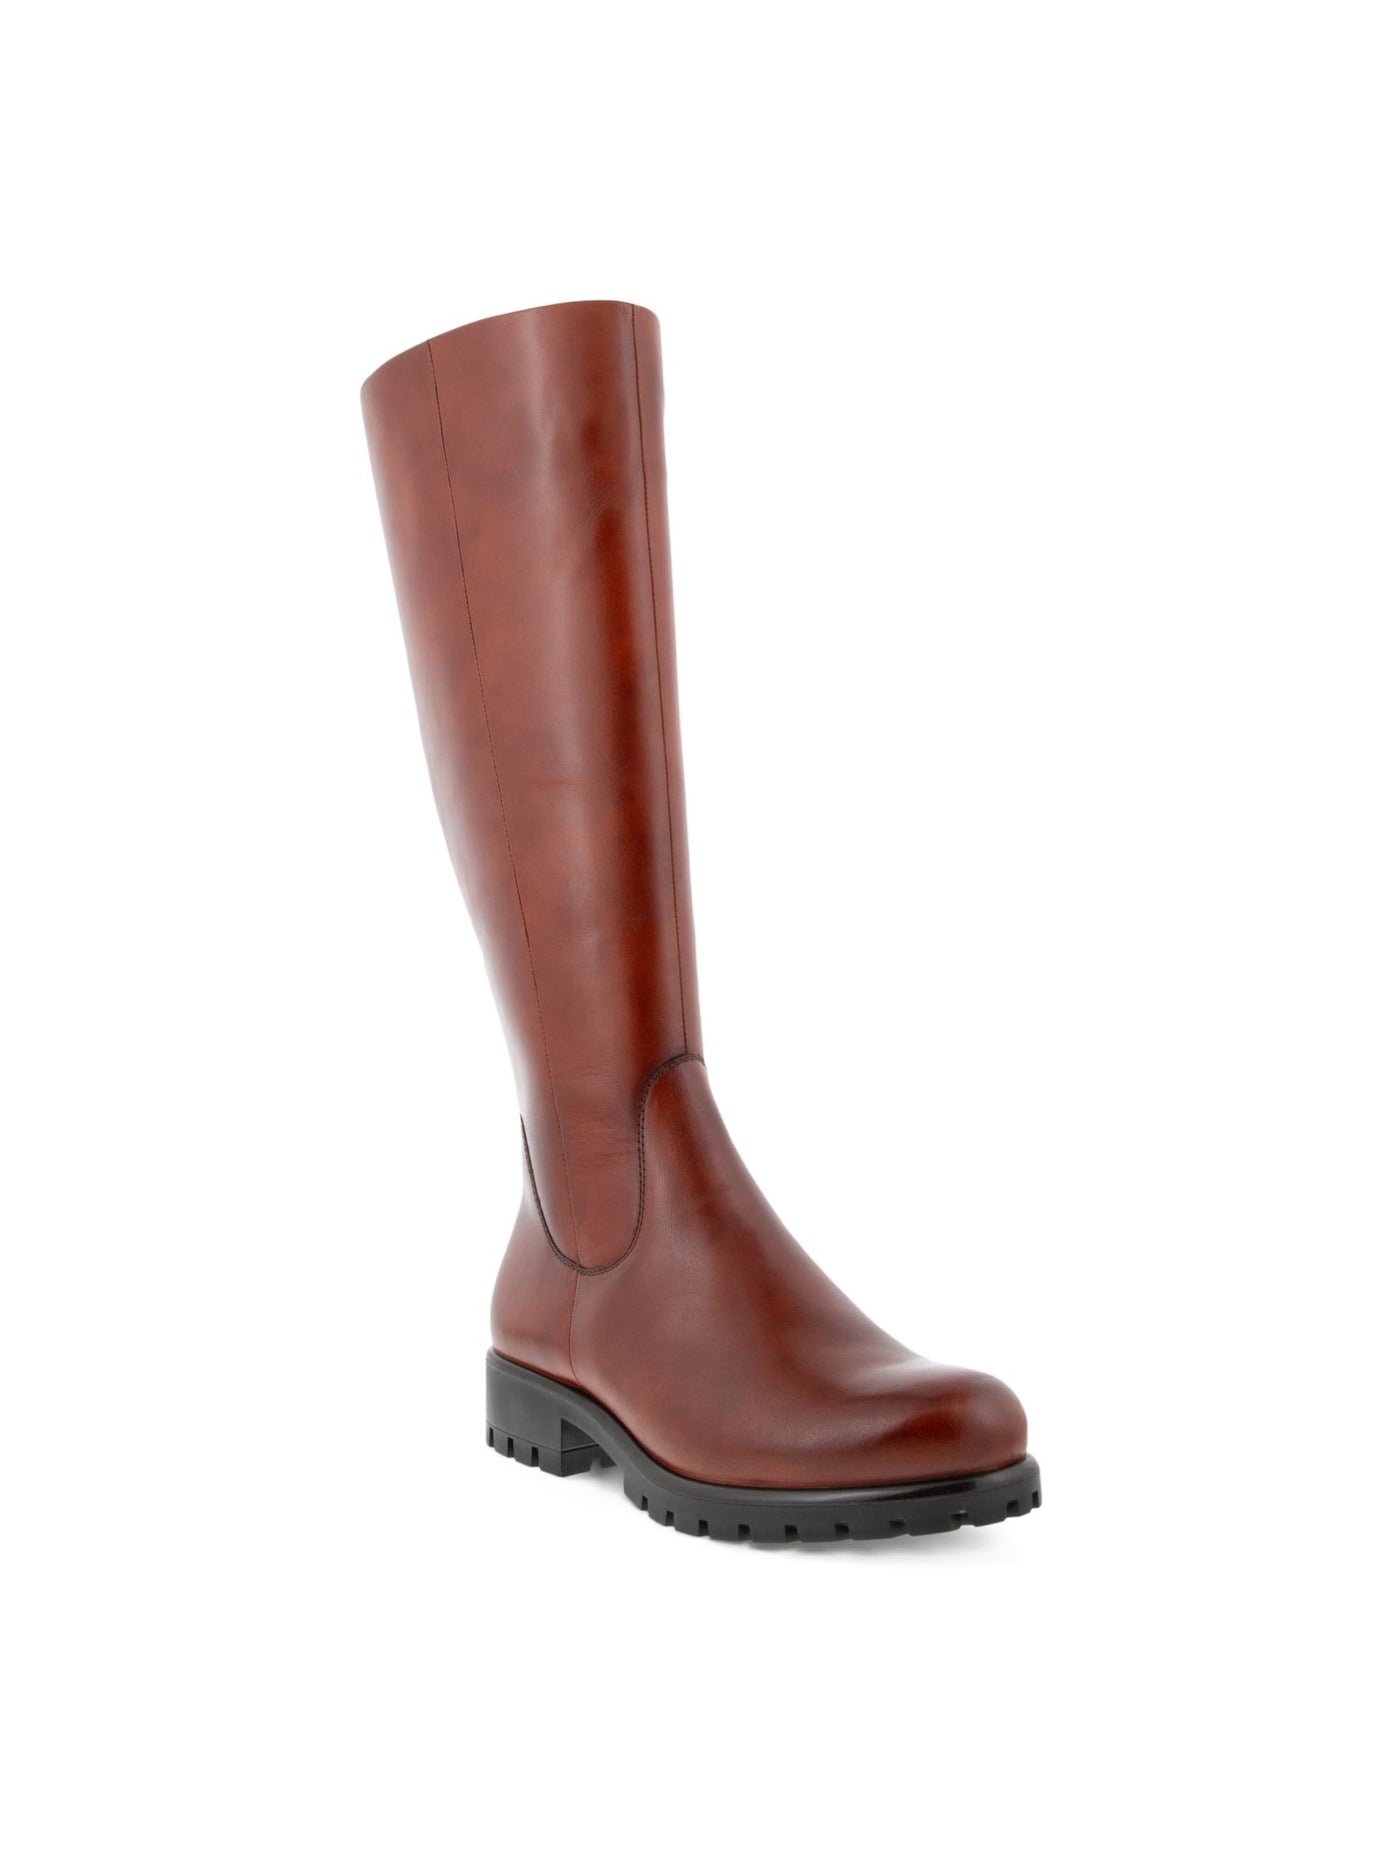 ECCO Womens Cognac Brown Back Zip For Calf Width Adjustment Water Resistant Modtray Round Toe Block Heel Zip-Up Leather Boots Shoes 9-9.5